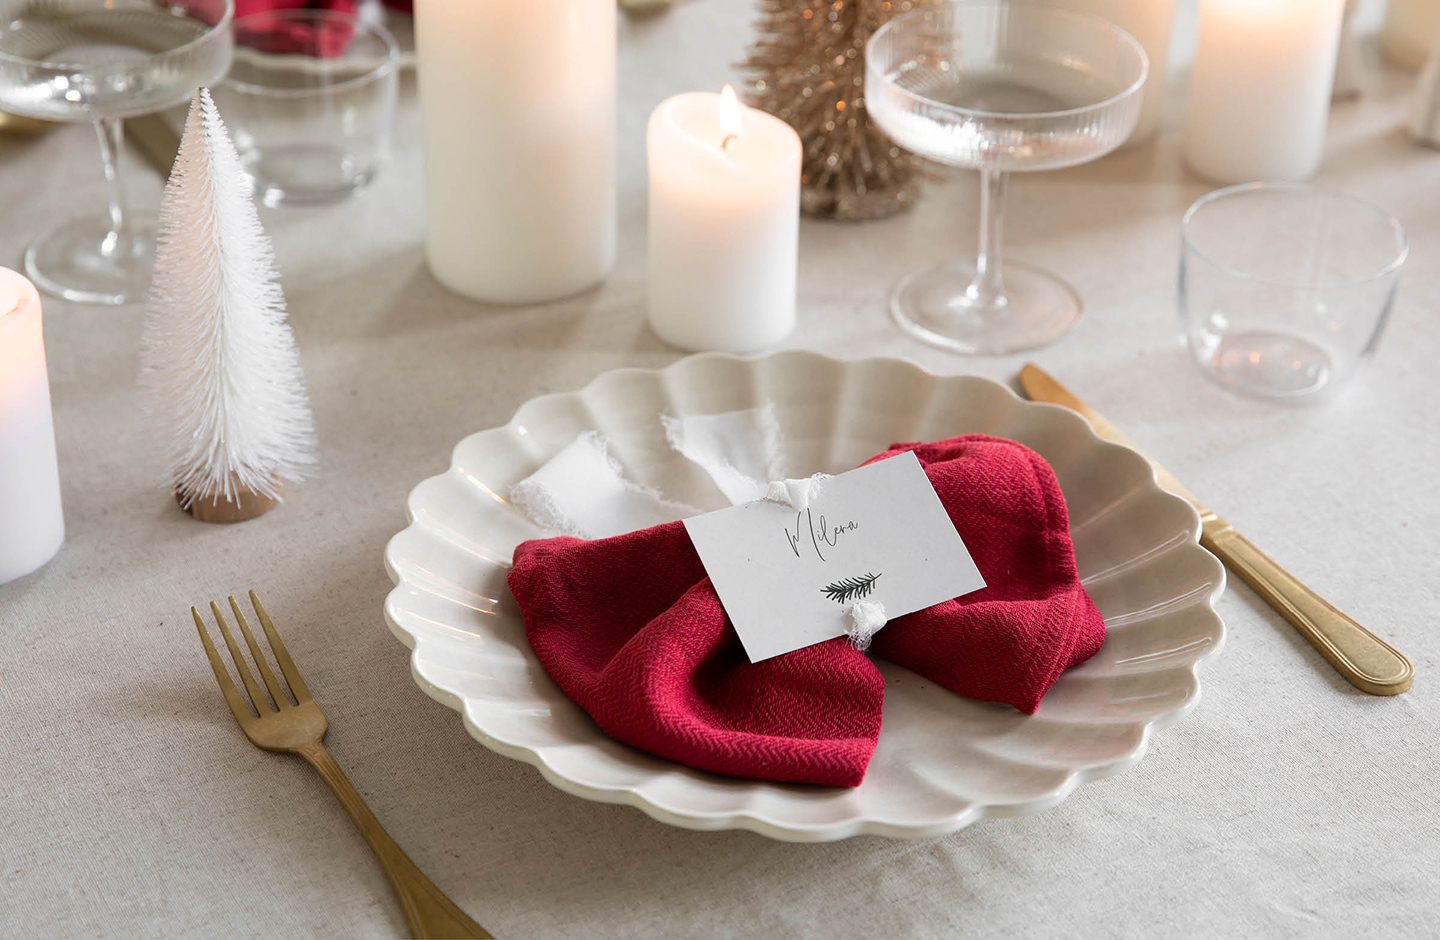 Weihnachtliche Tischdekoration selber machen: Servietten aus Stoff verziert mit personalisierten Tischkärtchen und edlen Stoffbändern.